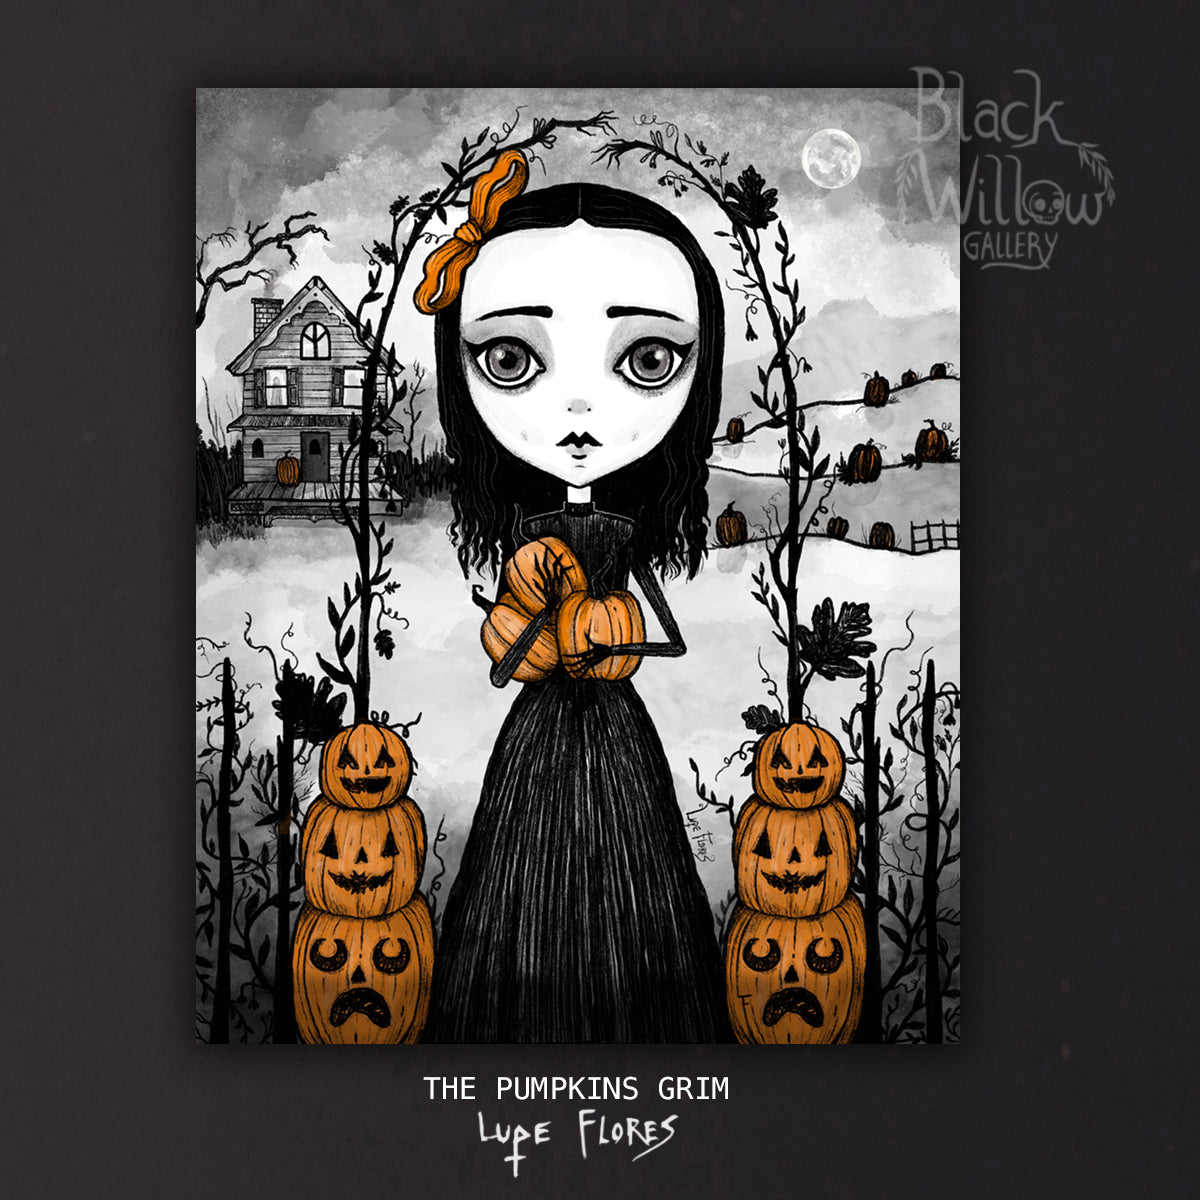 The Pumpkins Grim Art Print